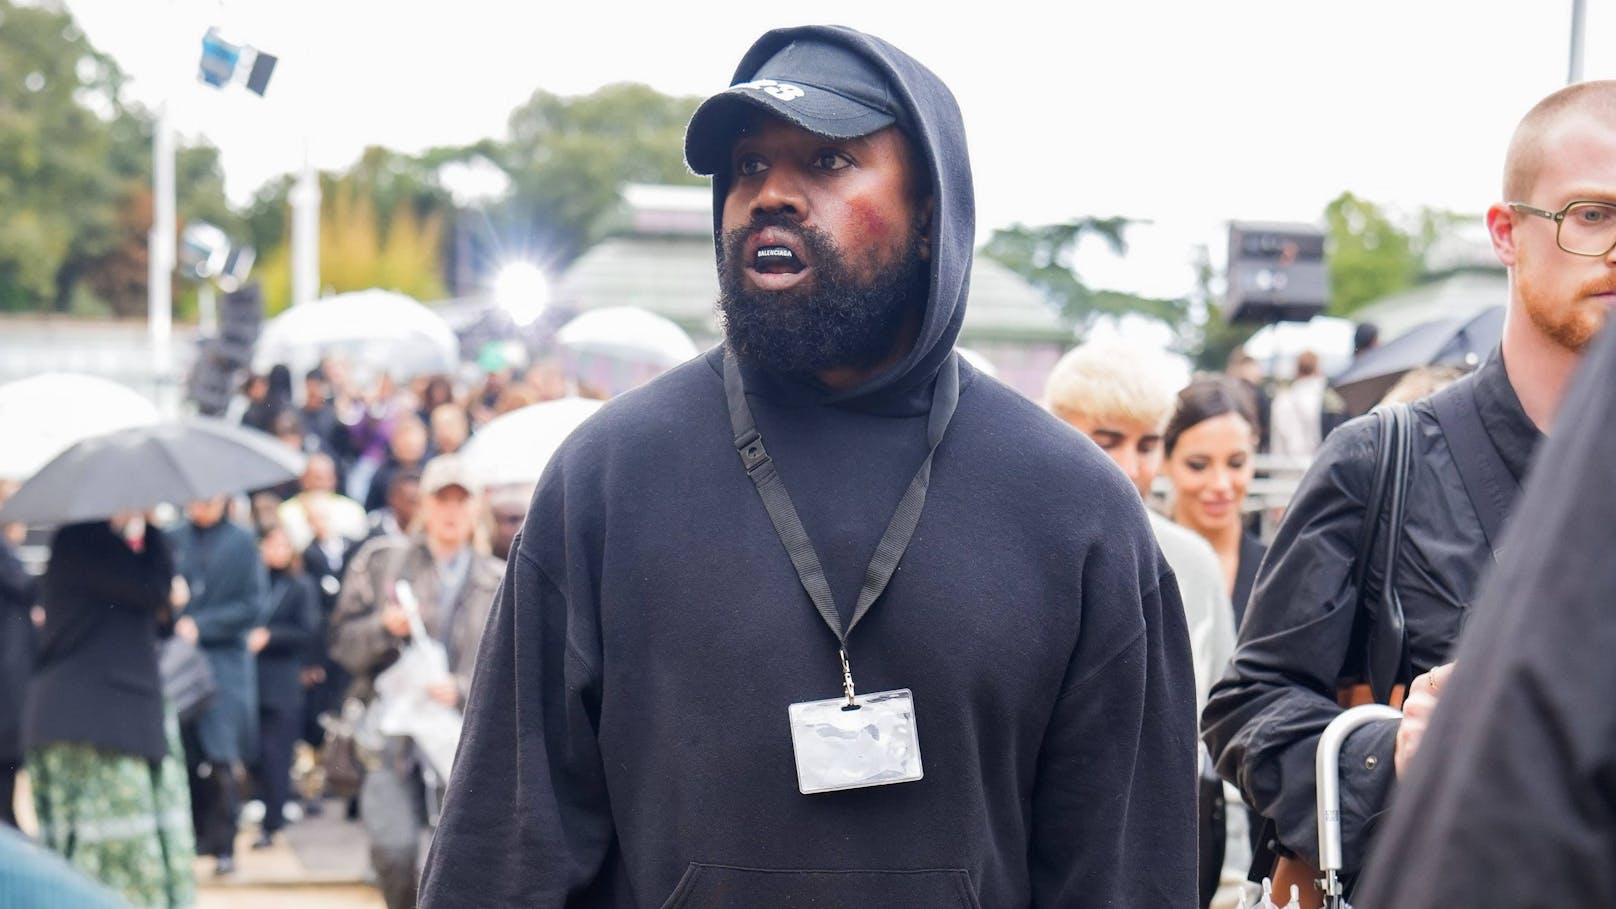 "Ziehe mich zurück" – Kanye West will Karriere beenden